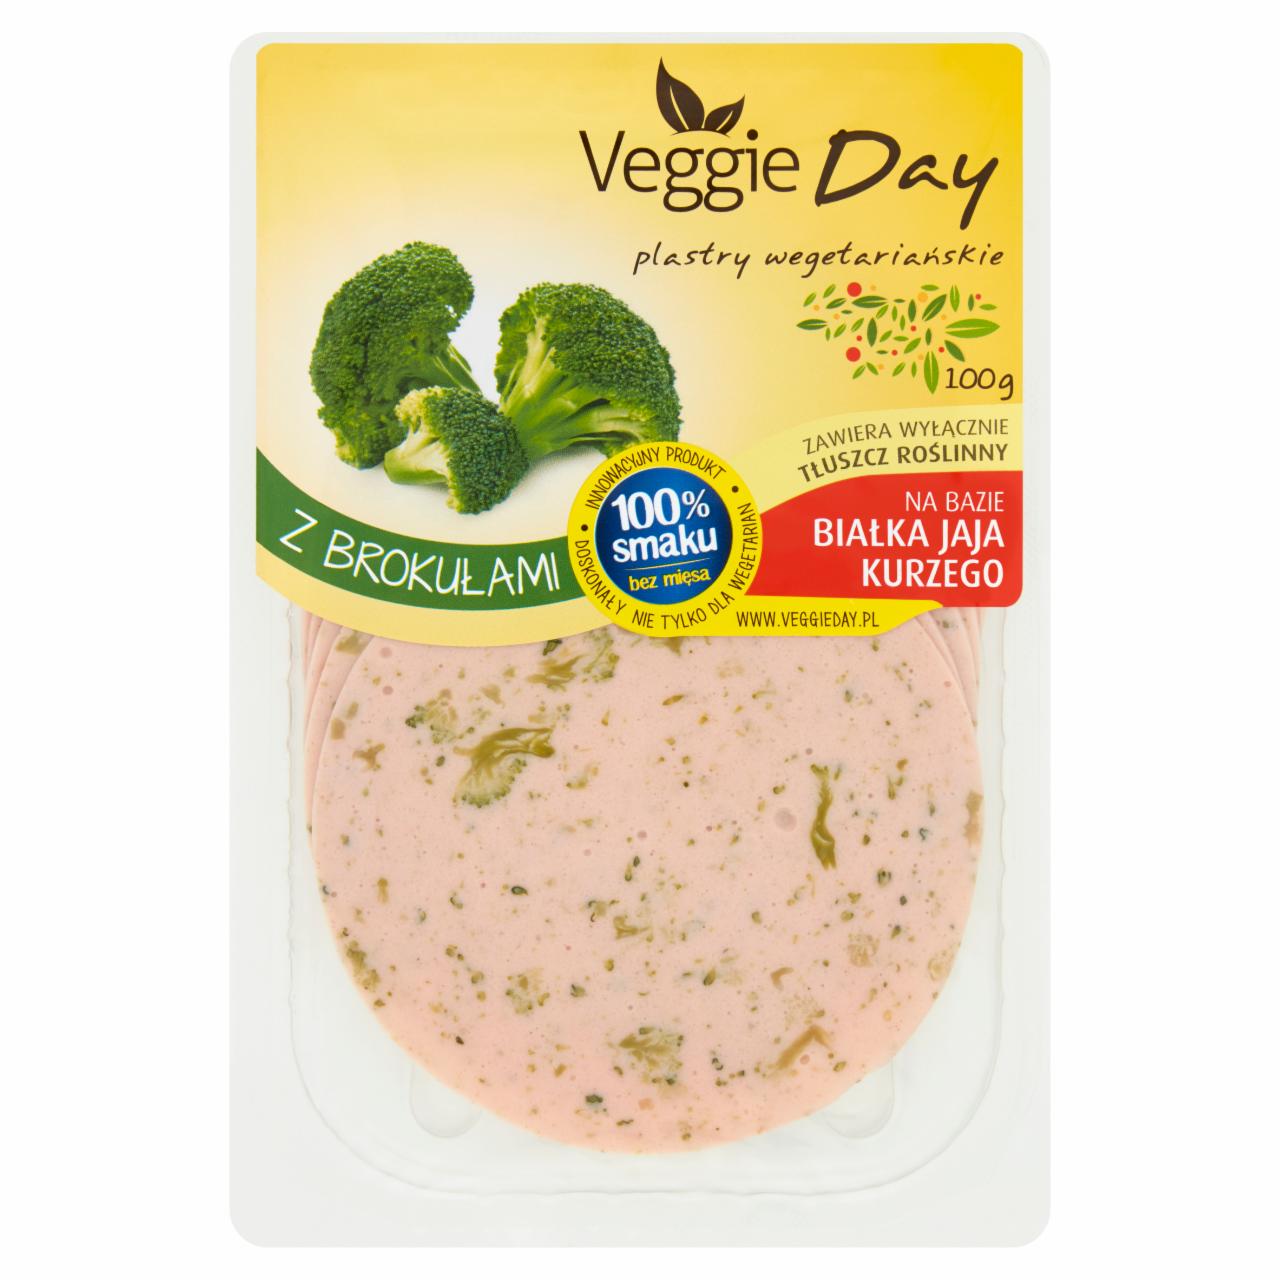 Zdjęcia - VeggieDay Plastry wegetariańskie z brokułami 100 g